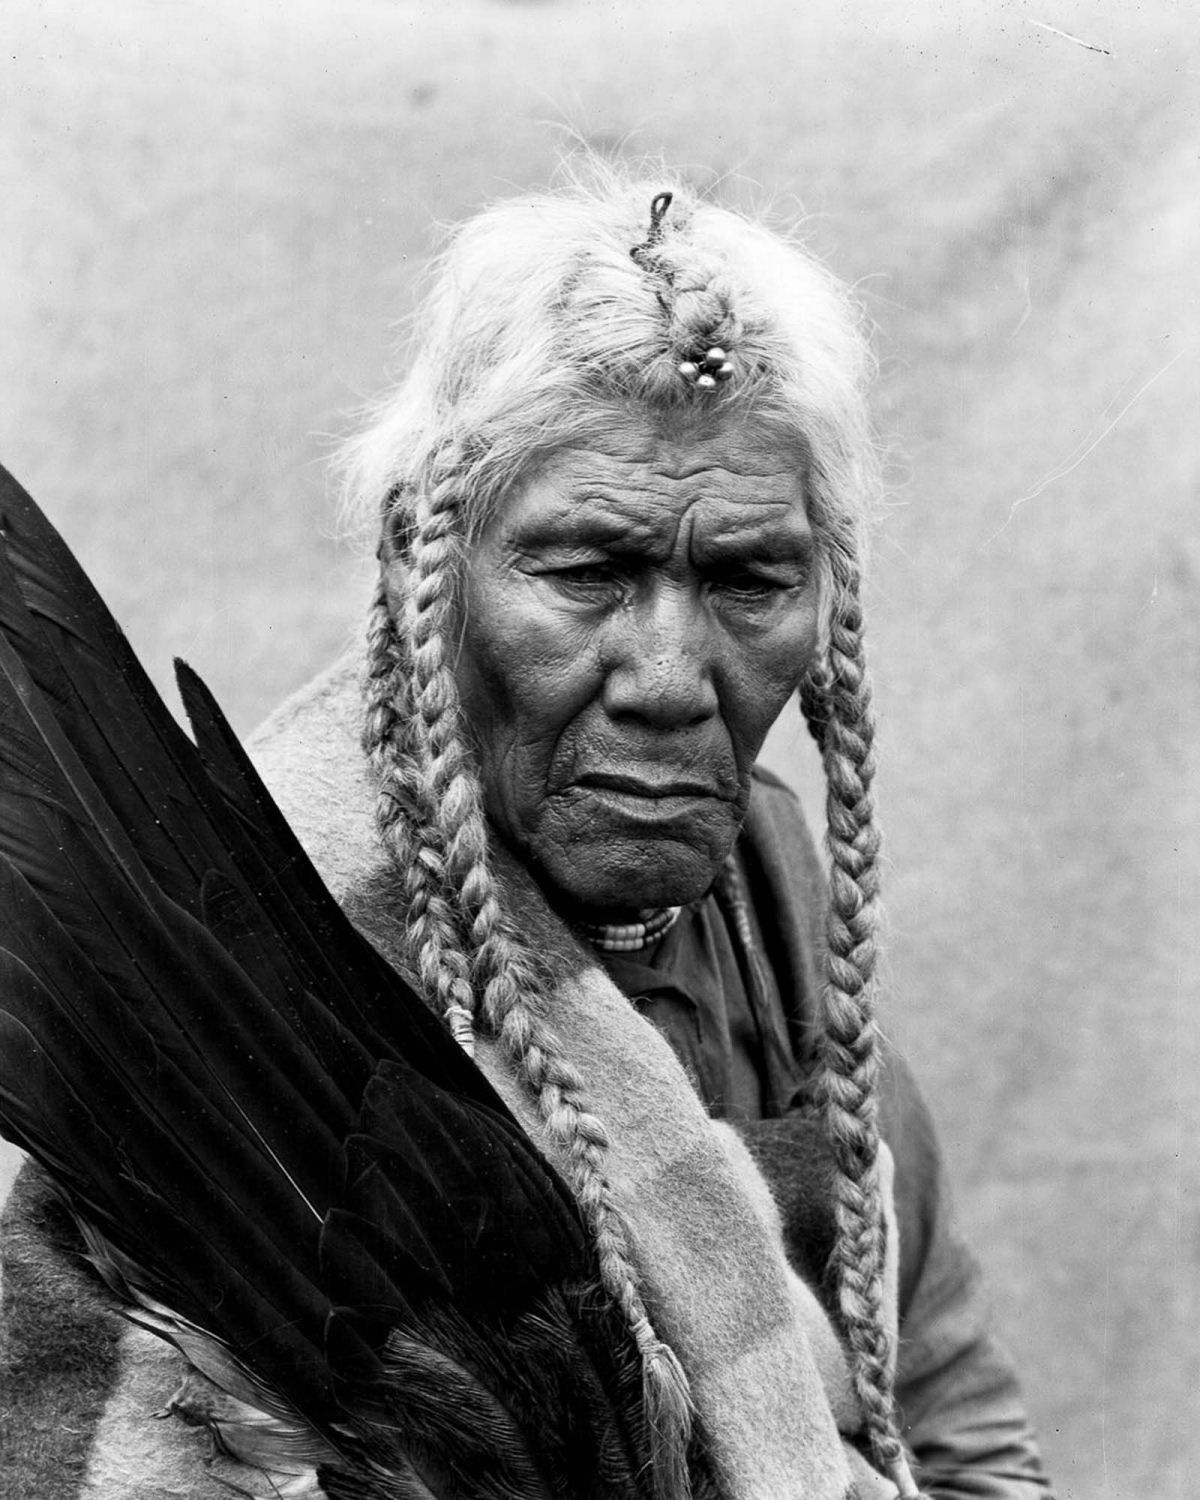 Os nativos das Primeiras Nações do Canadá em fotos históricas raras 23